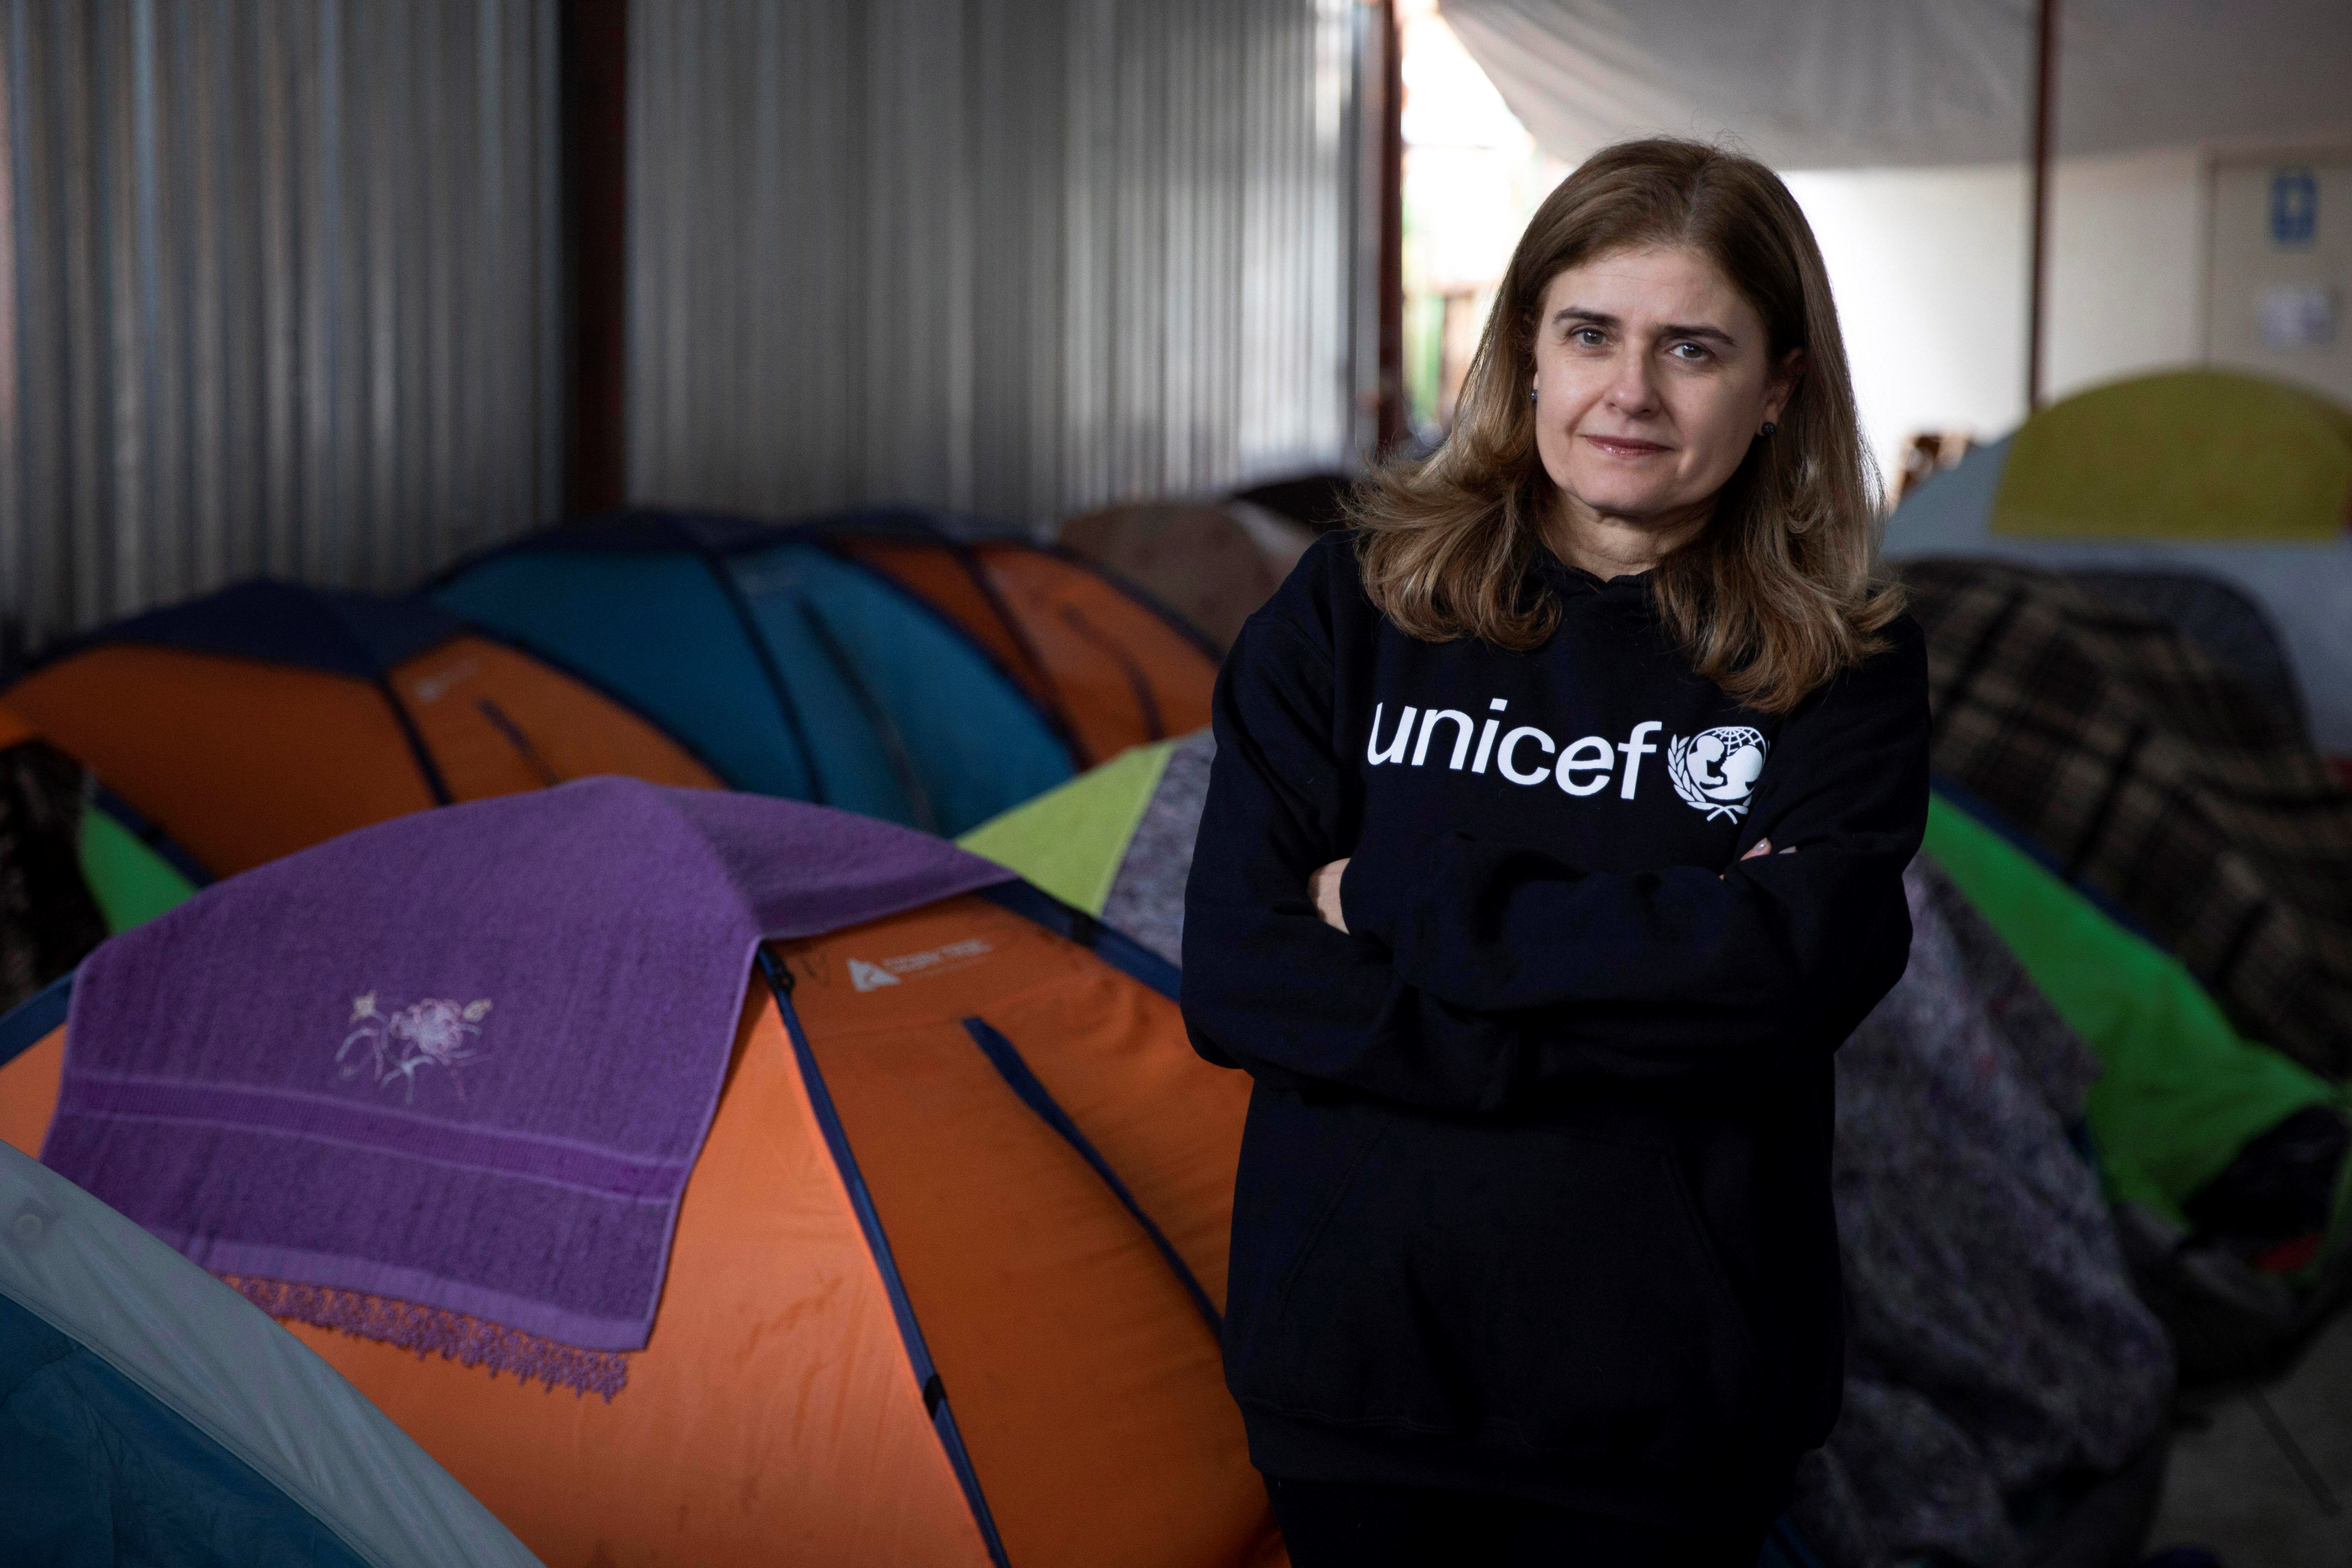  Prioritario para Unicef atender a los niños migrantes no acompañados